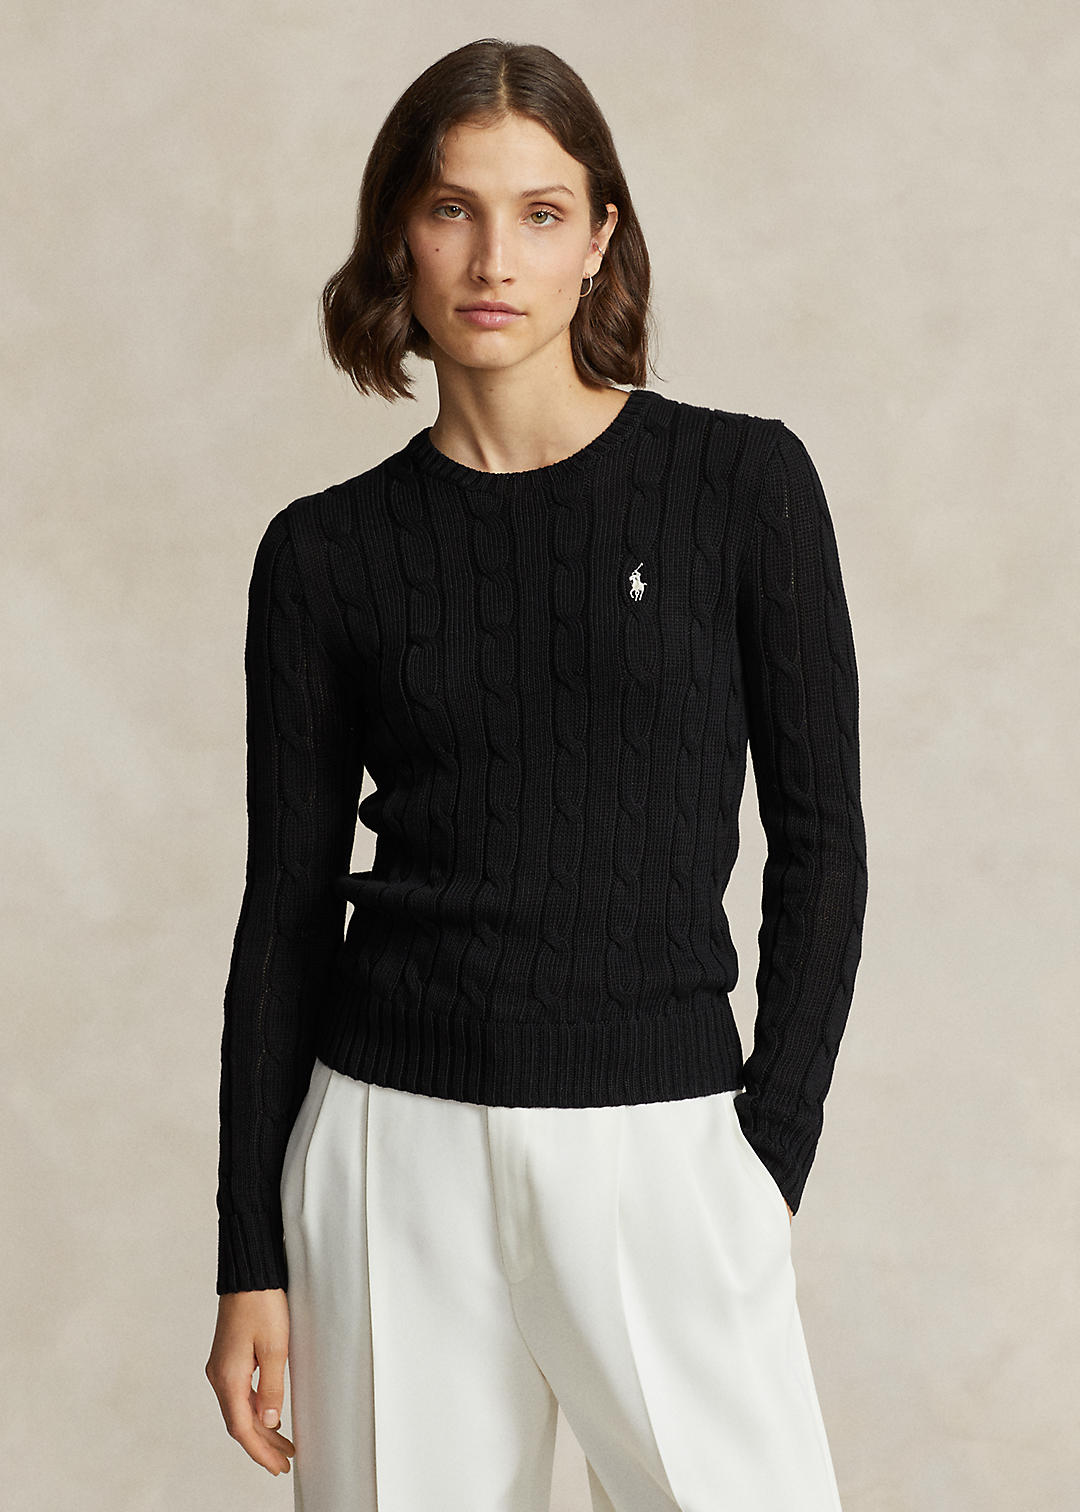 Verbonden De onze Zenuwinzinking Women's Slim Fit Cable-Knit Sweater | Ralph Lauren